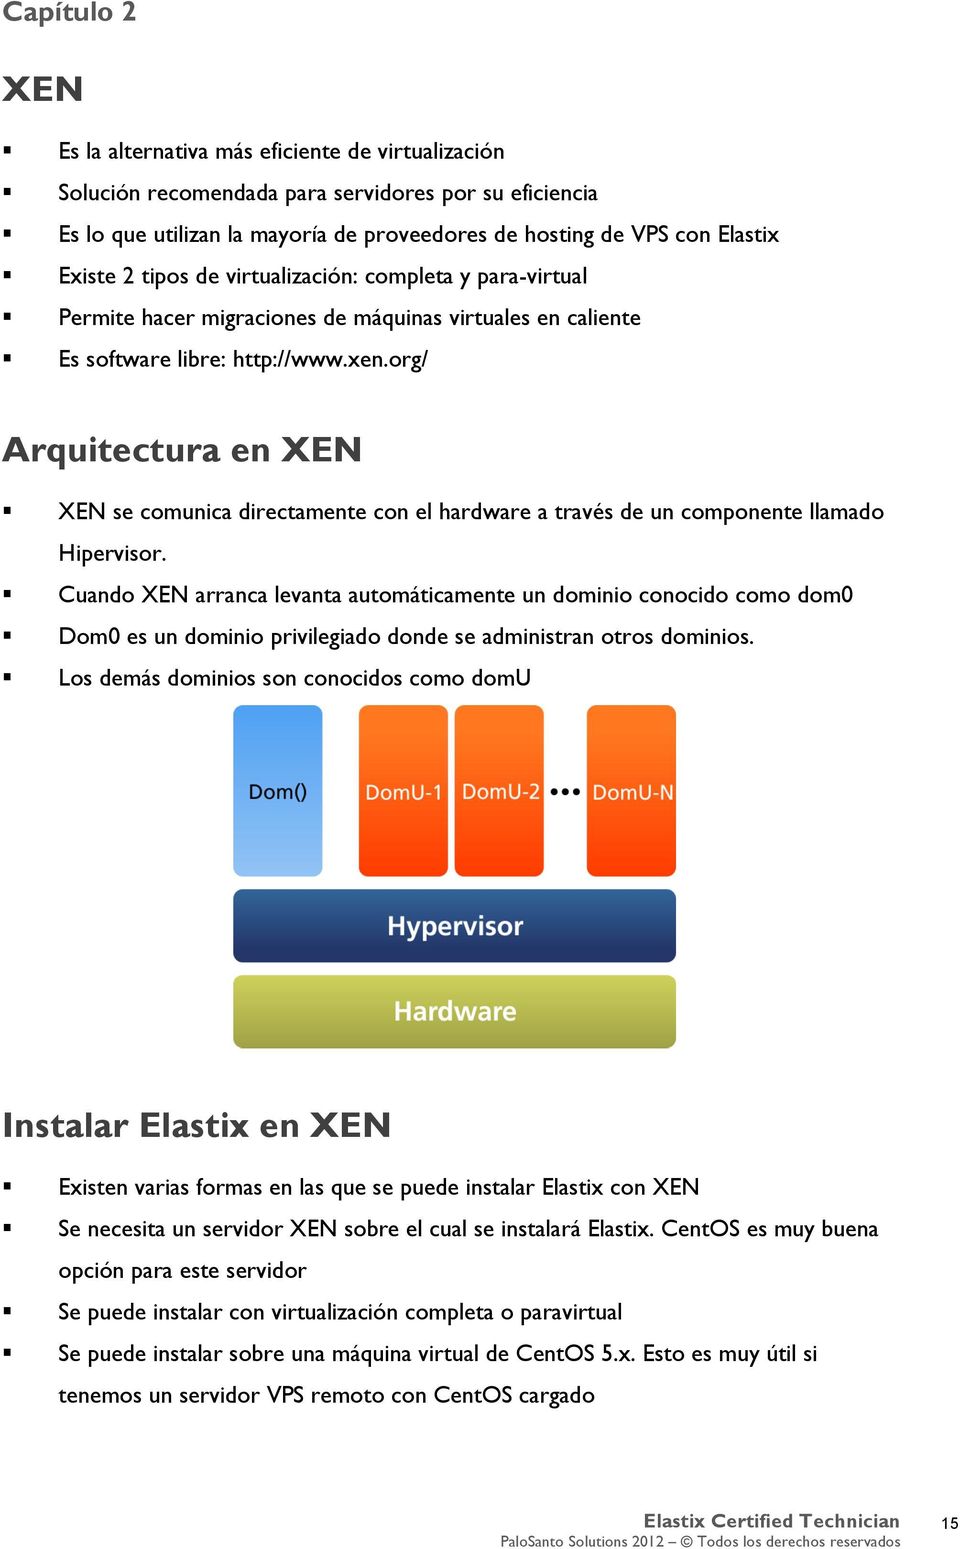 org/ Arquitectura en XEN XEN se comunica directamente con el hardware a través de un componente llamado Hipervisor.